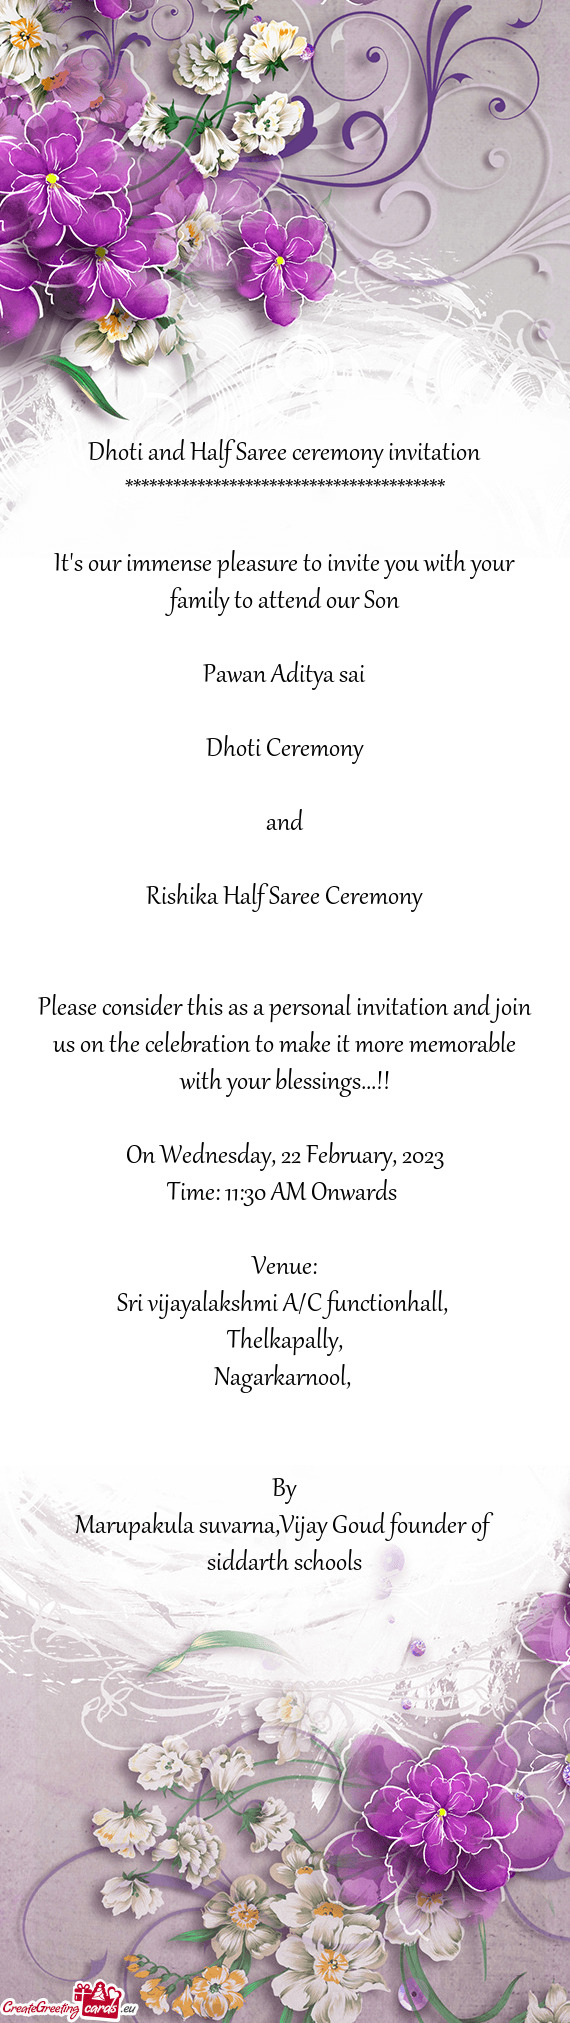 Rishika Half Saree Ceremony